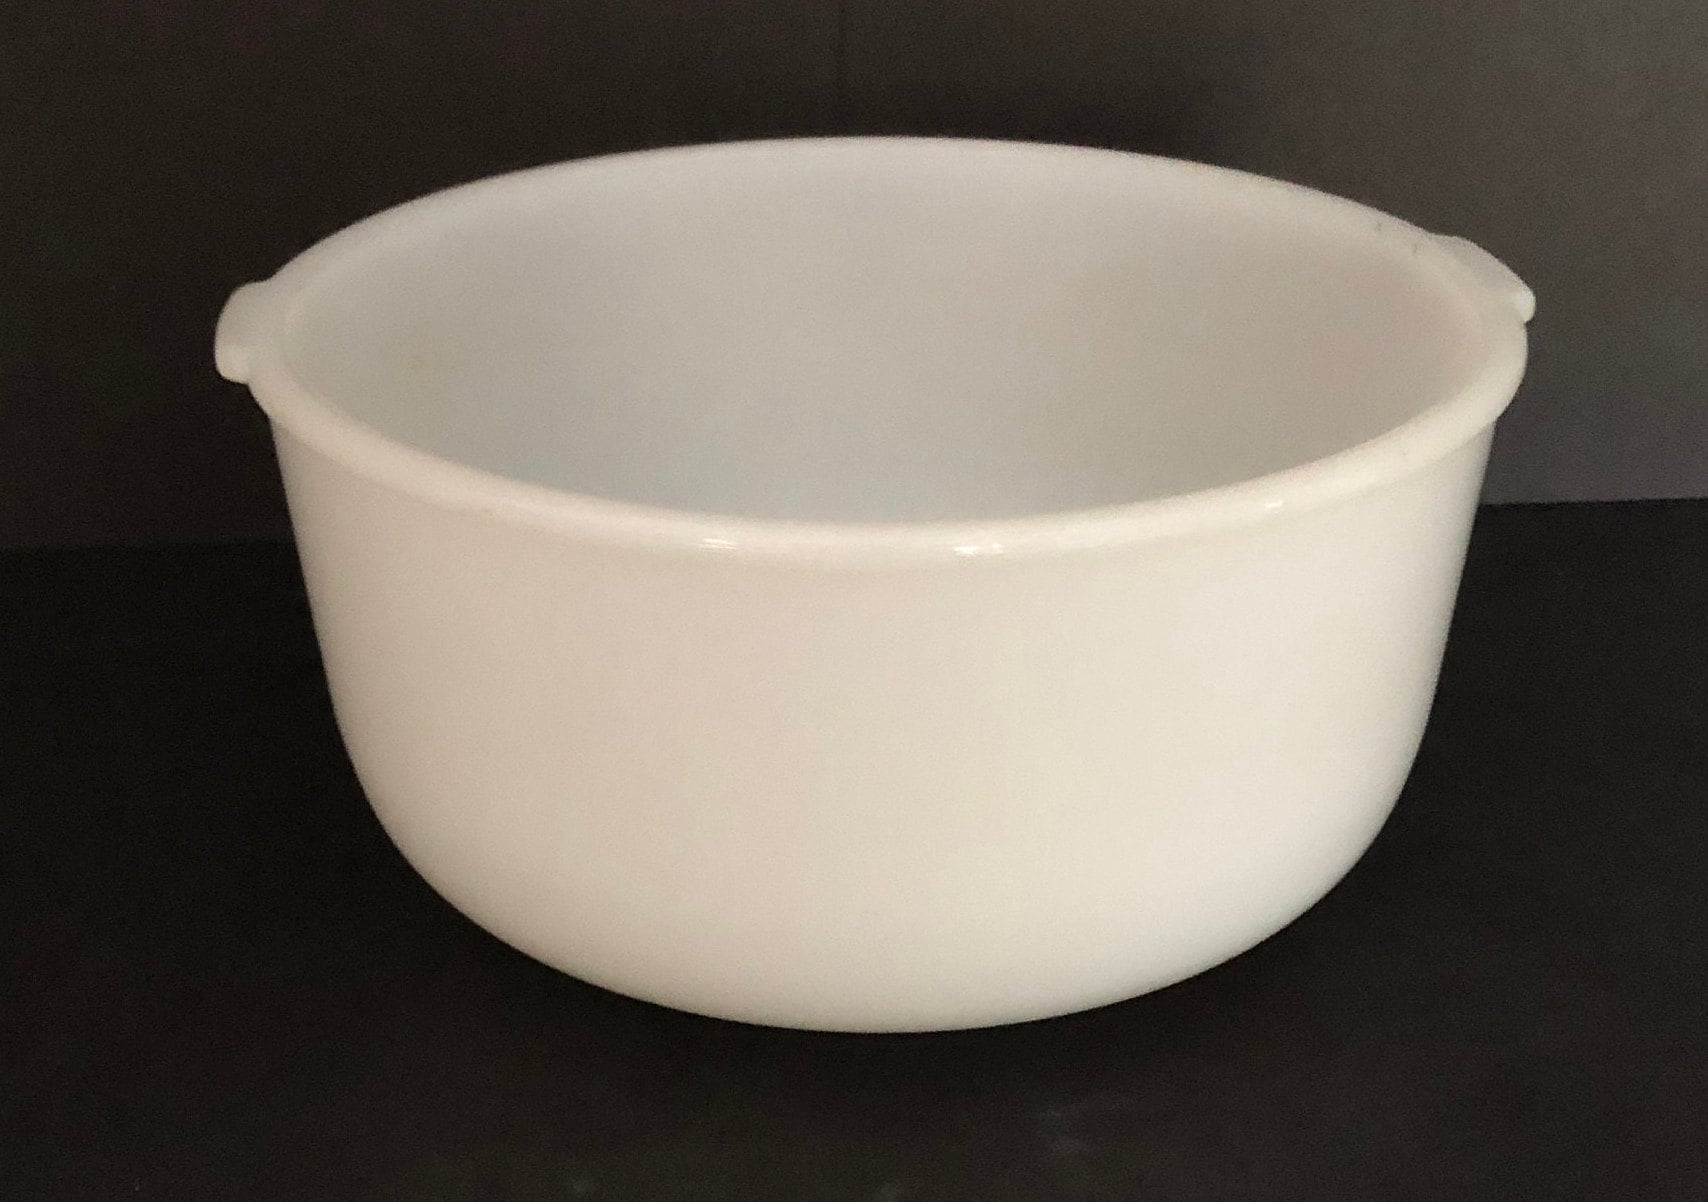  Sunbeam 115969-001 Glass Bowl 4 Quart: Home & Kitchen